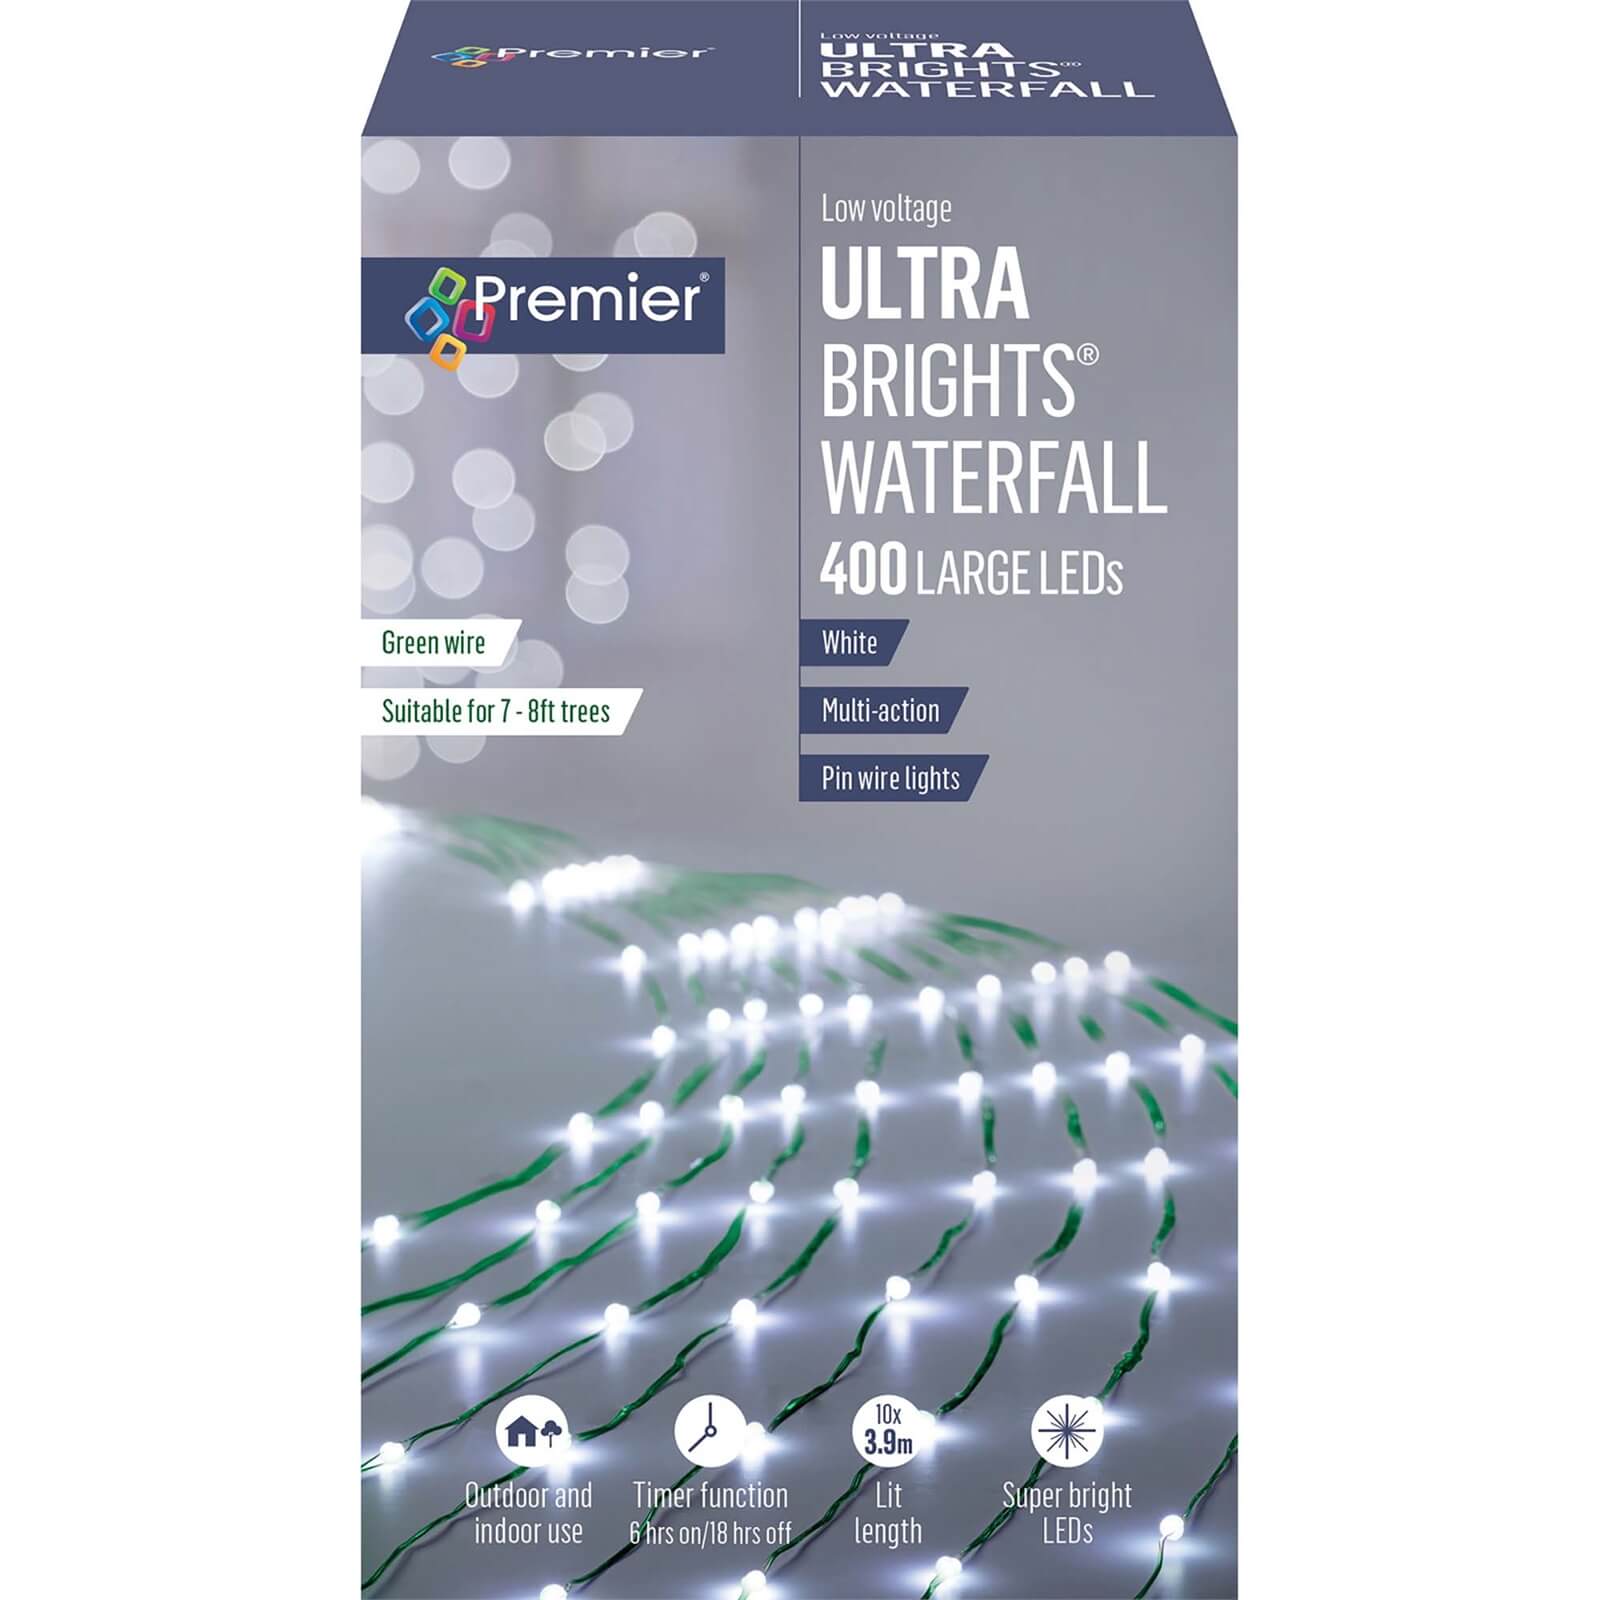 2.5M 400 White LED UltraBright Waterfall Lights